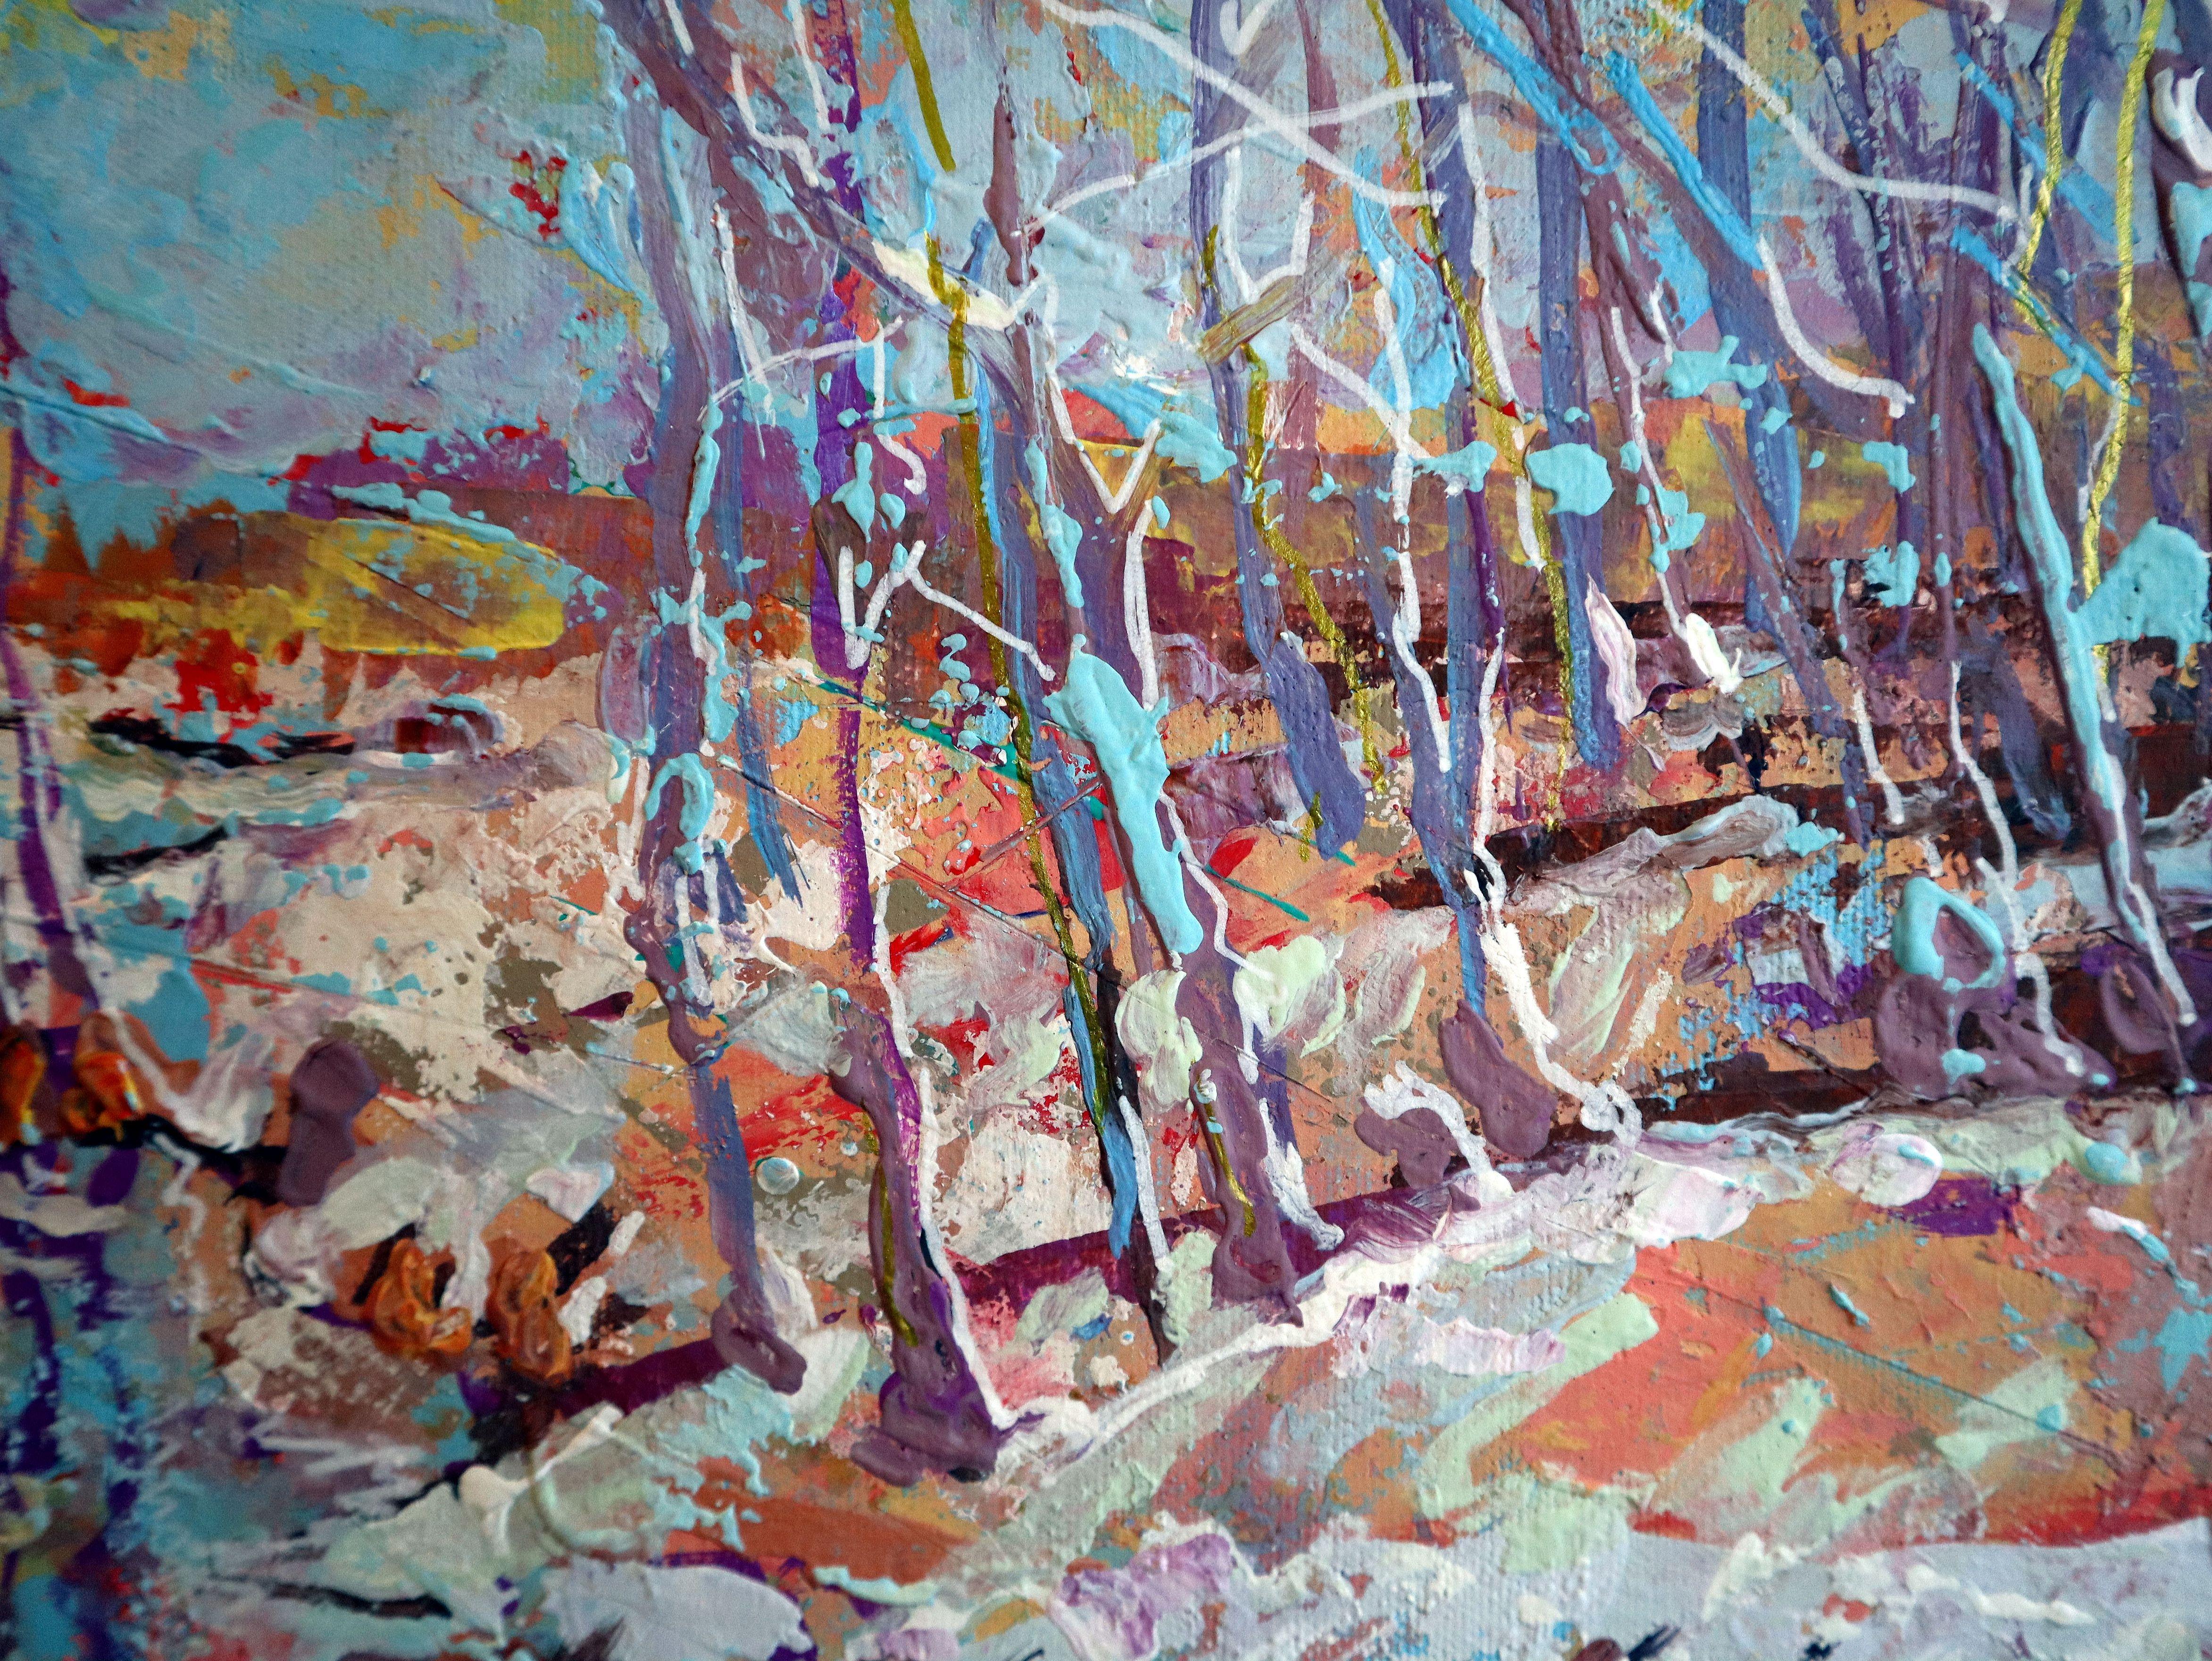 The Coming of Winter - Impressionist Painting by RAKHMET REDZHEPOV (RAMZI)